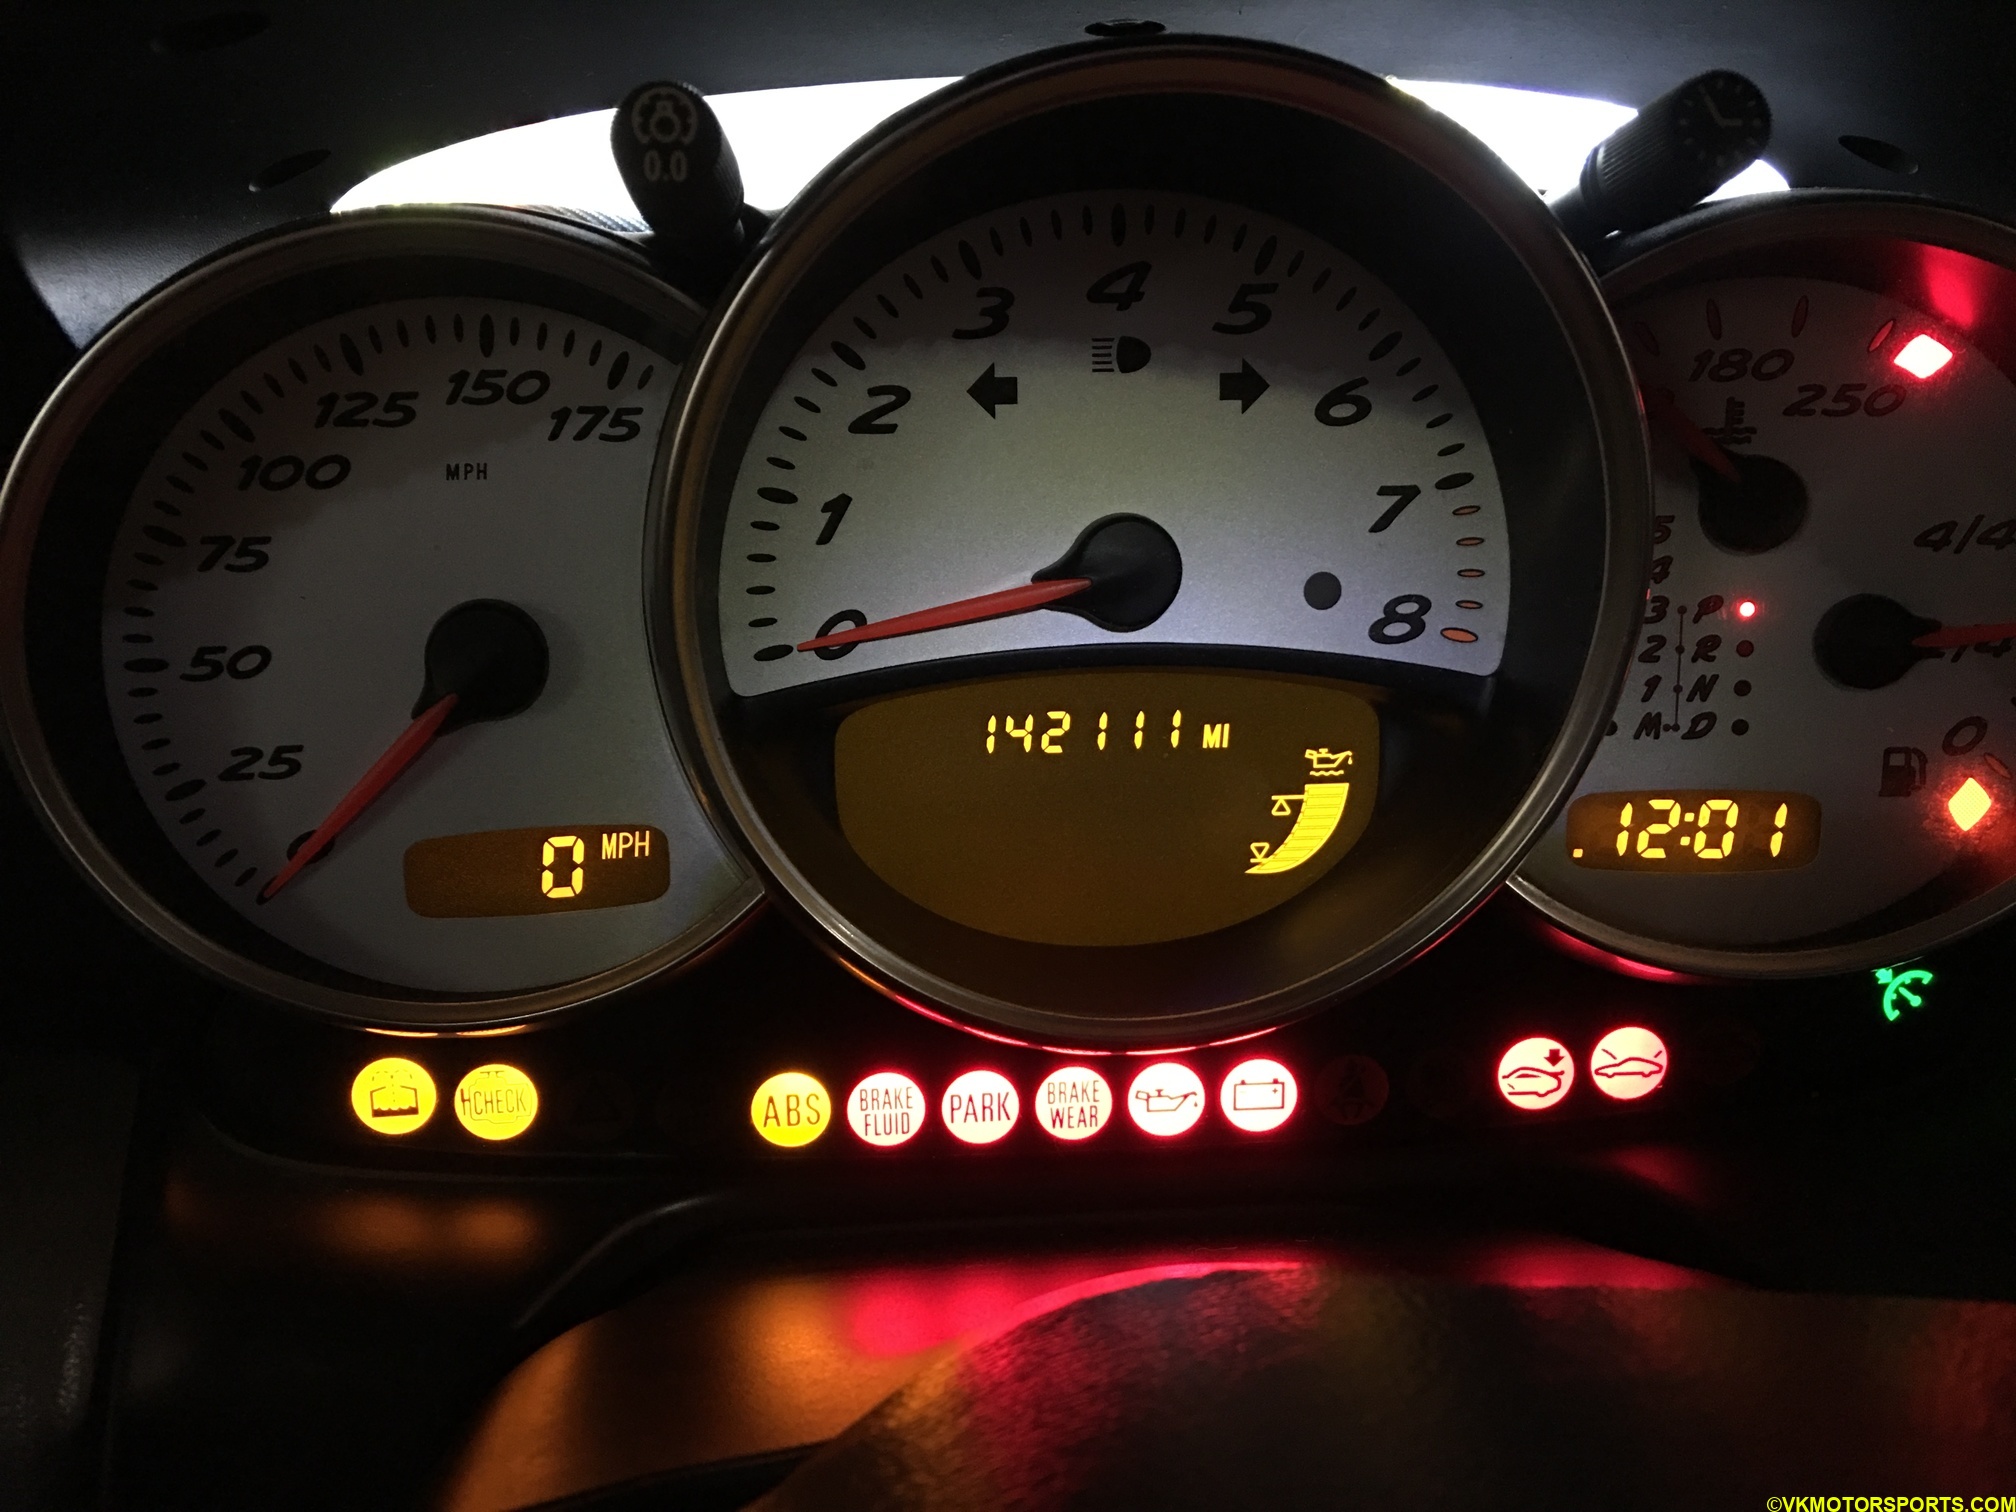 Figure 18. Engine oil indicator shows maximum level